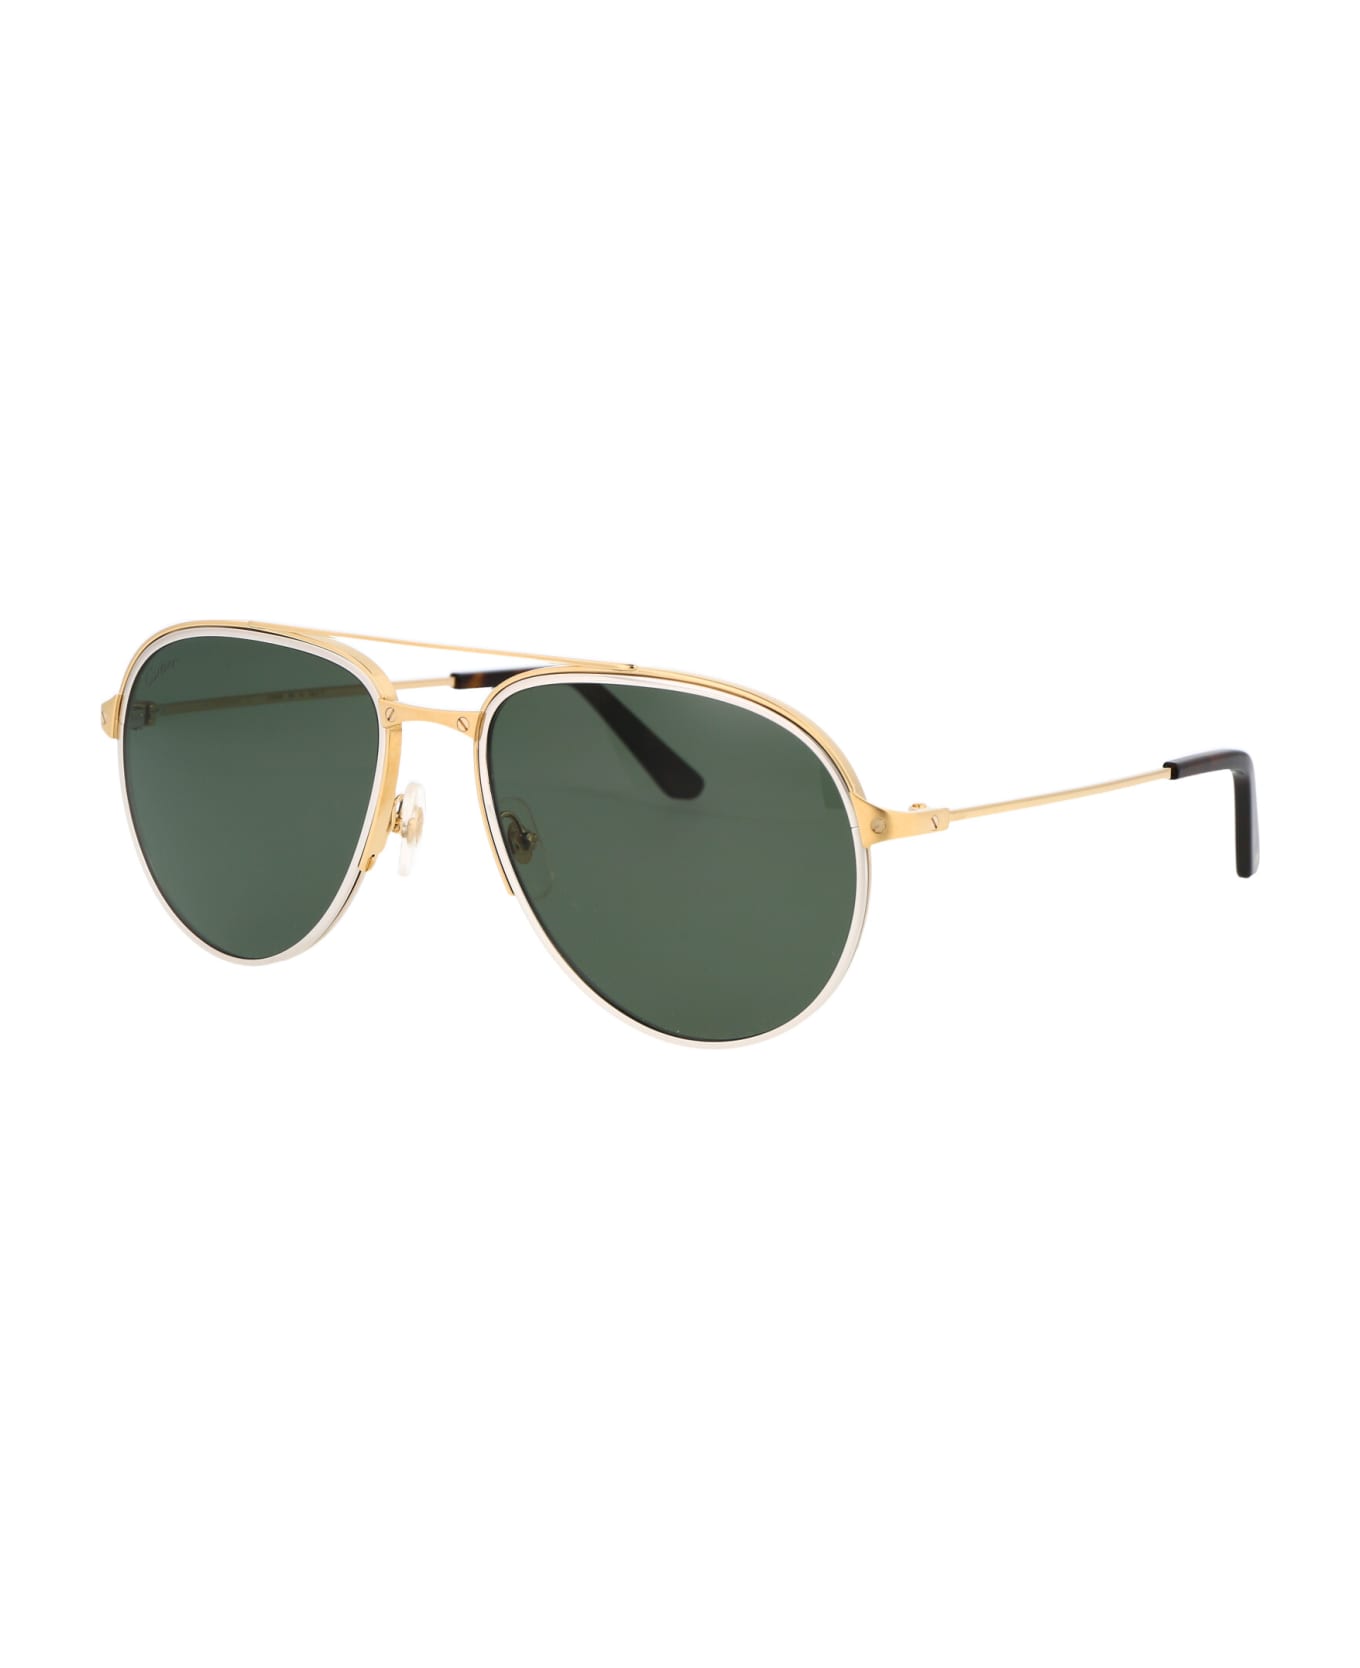 Cartier Eyewear Ct0325s Sunglasses - 006 GOLD GOLD GREEN